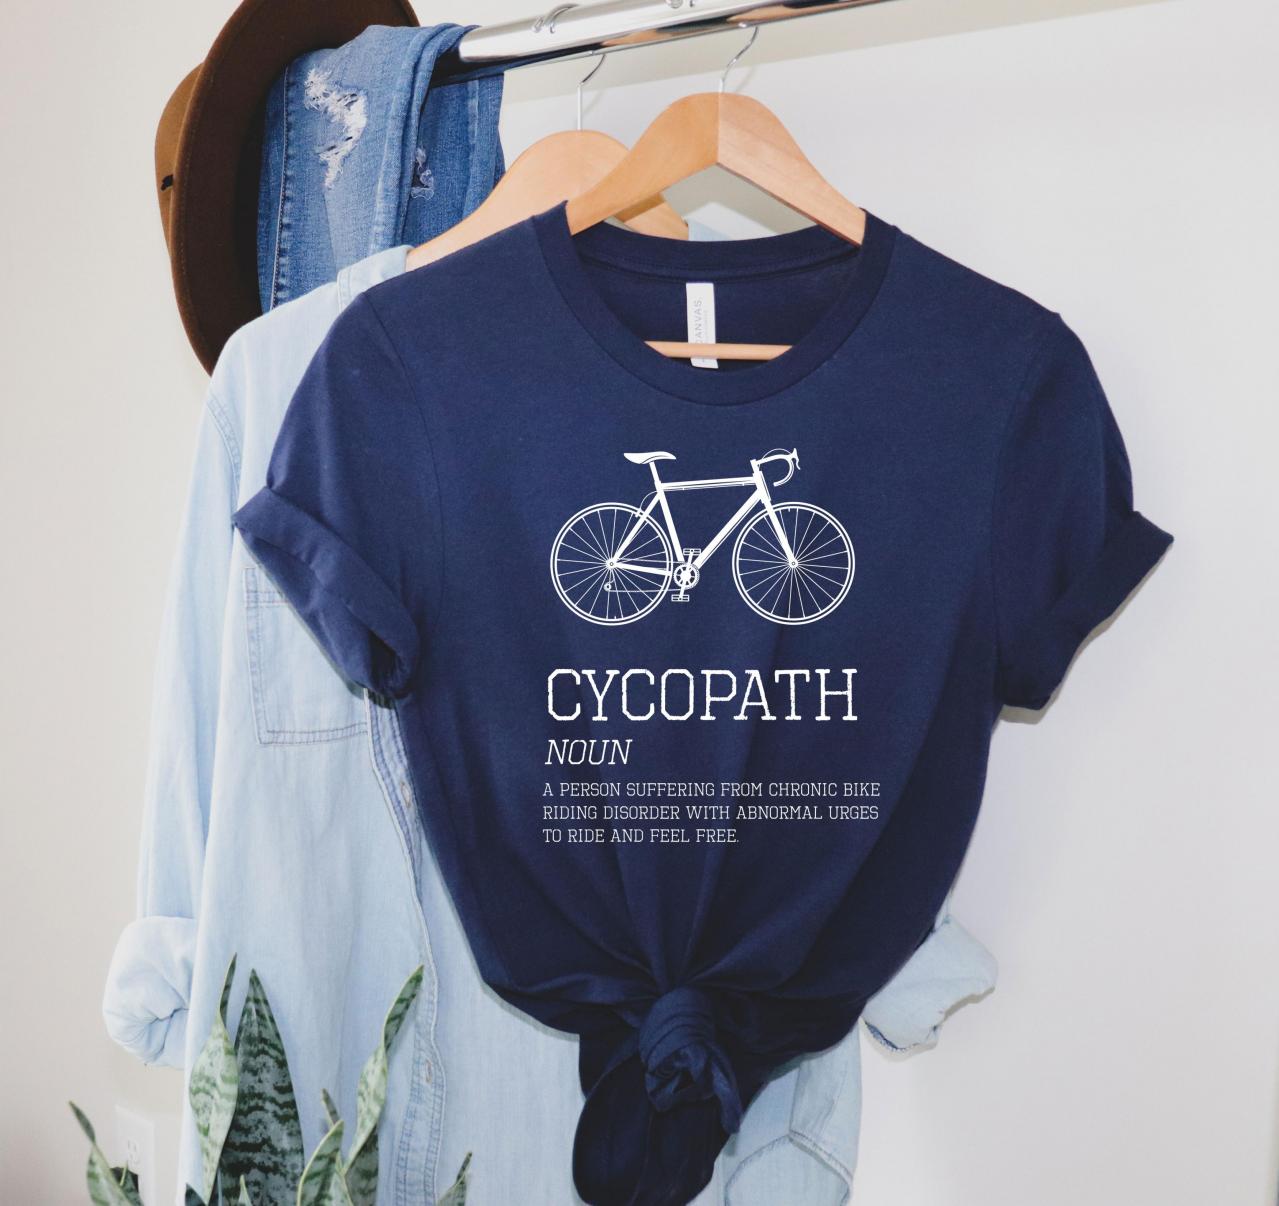 Cycopath T Shirt, Cycling Shirt, Bike Bicycle Shirt, Funny Bike Gift, Road Bike Gifts, Cycling Gift Idea, Funny Cycling T Shirt, Cycling T-shirt,